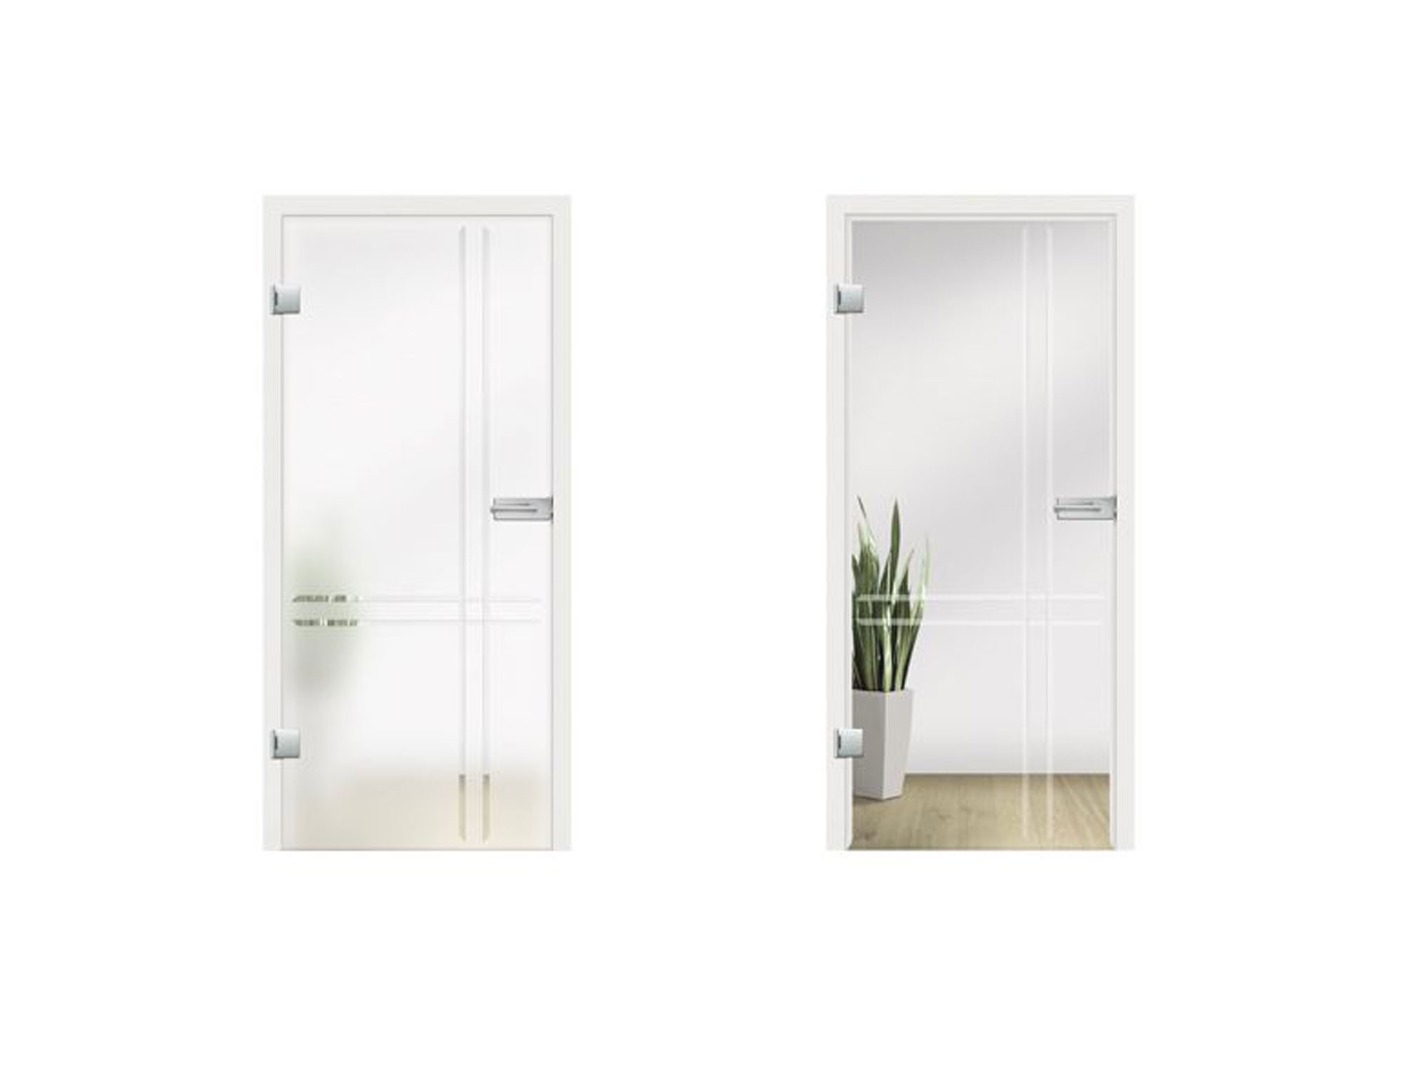 Linea Grooved Glass Door Design - Frosted Glass Internal Doors